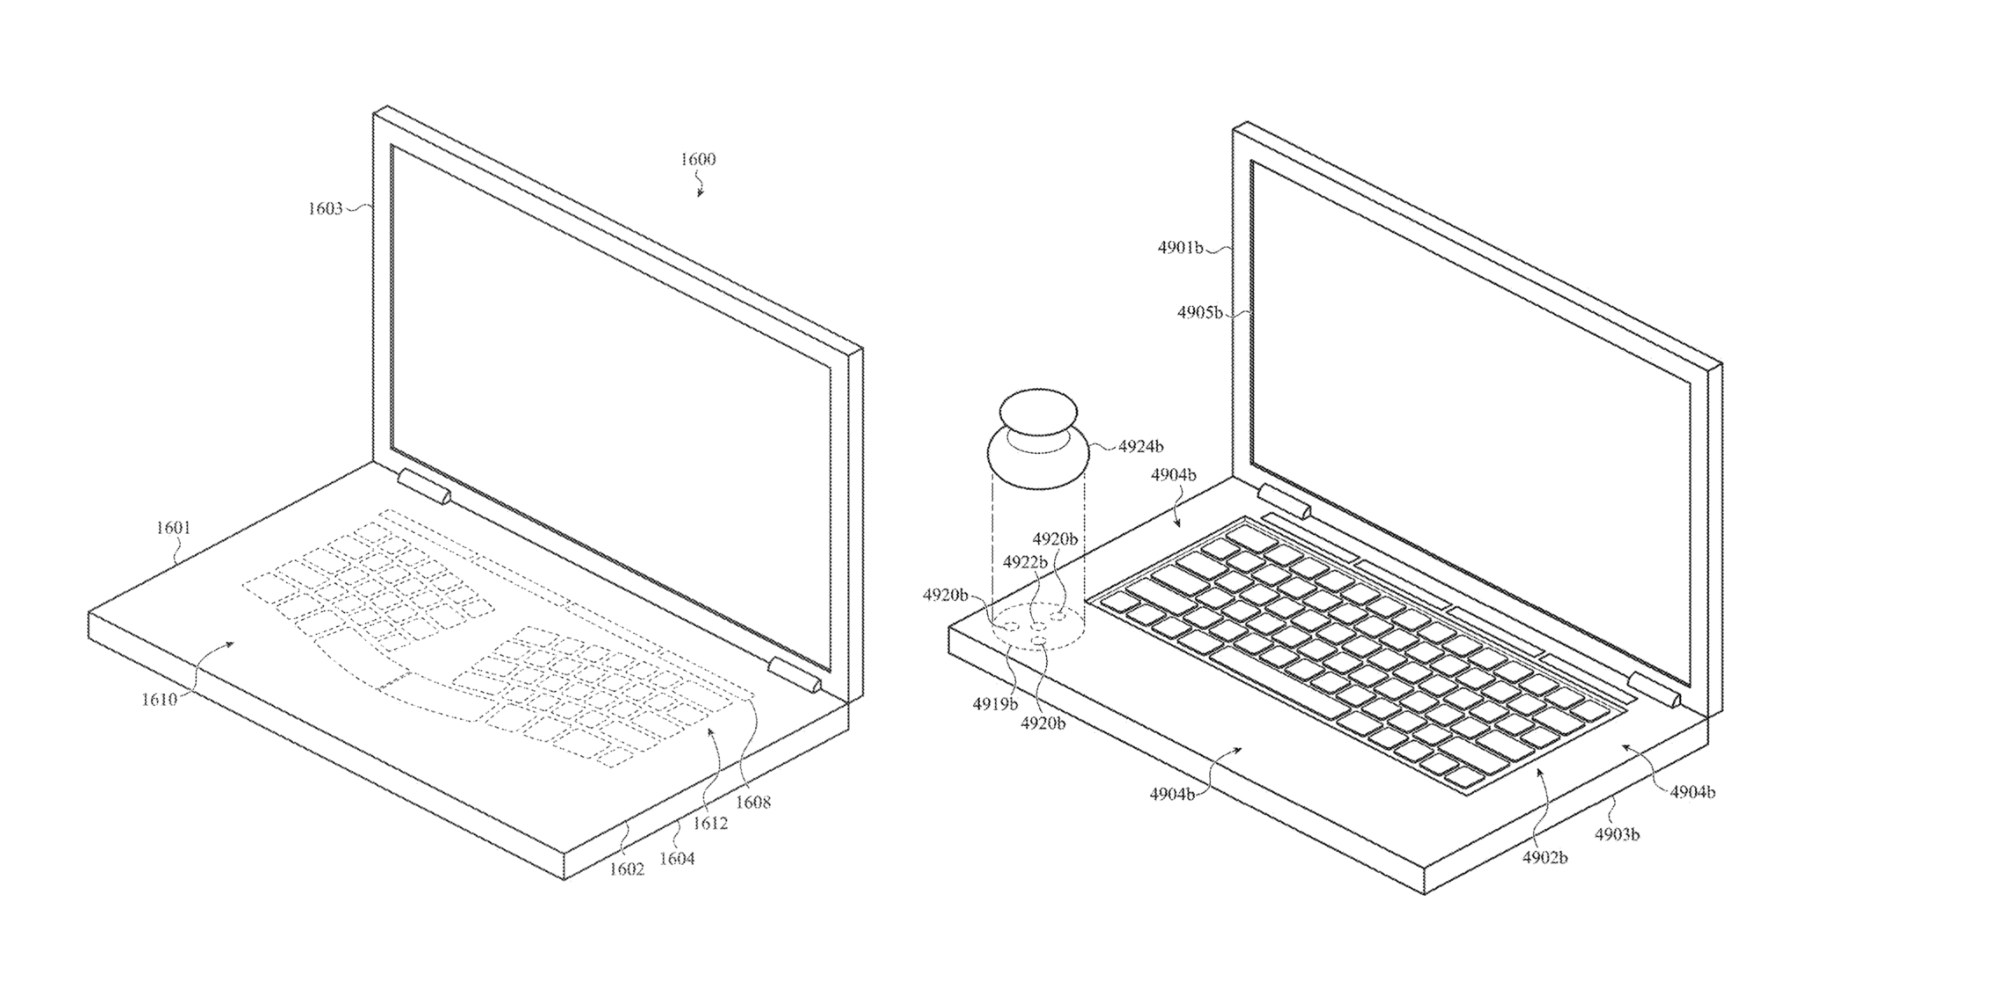 Patente de discagem de teclado ergonômico Apple MacBook.